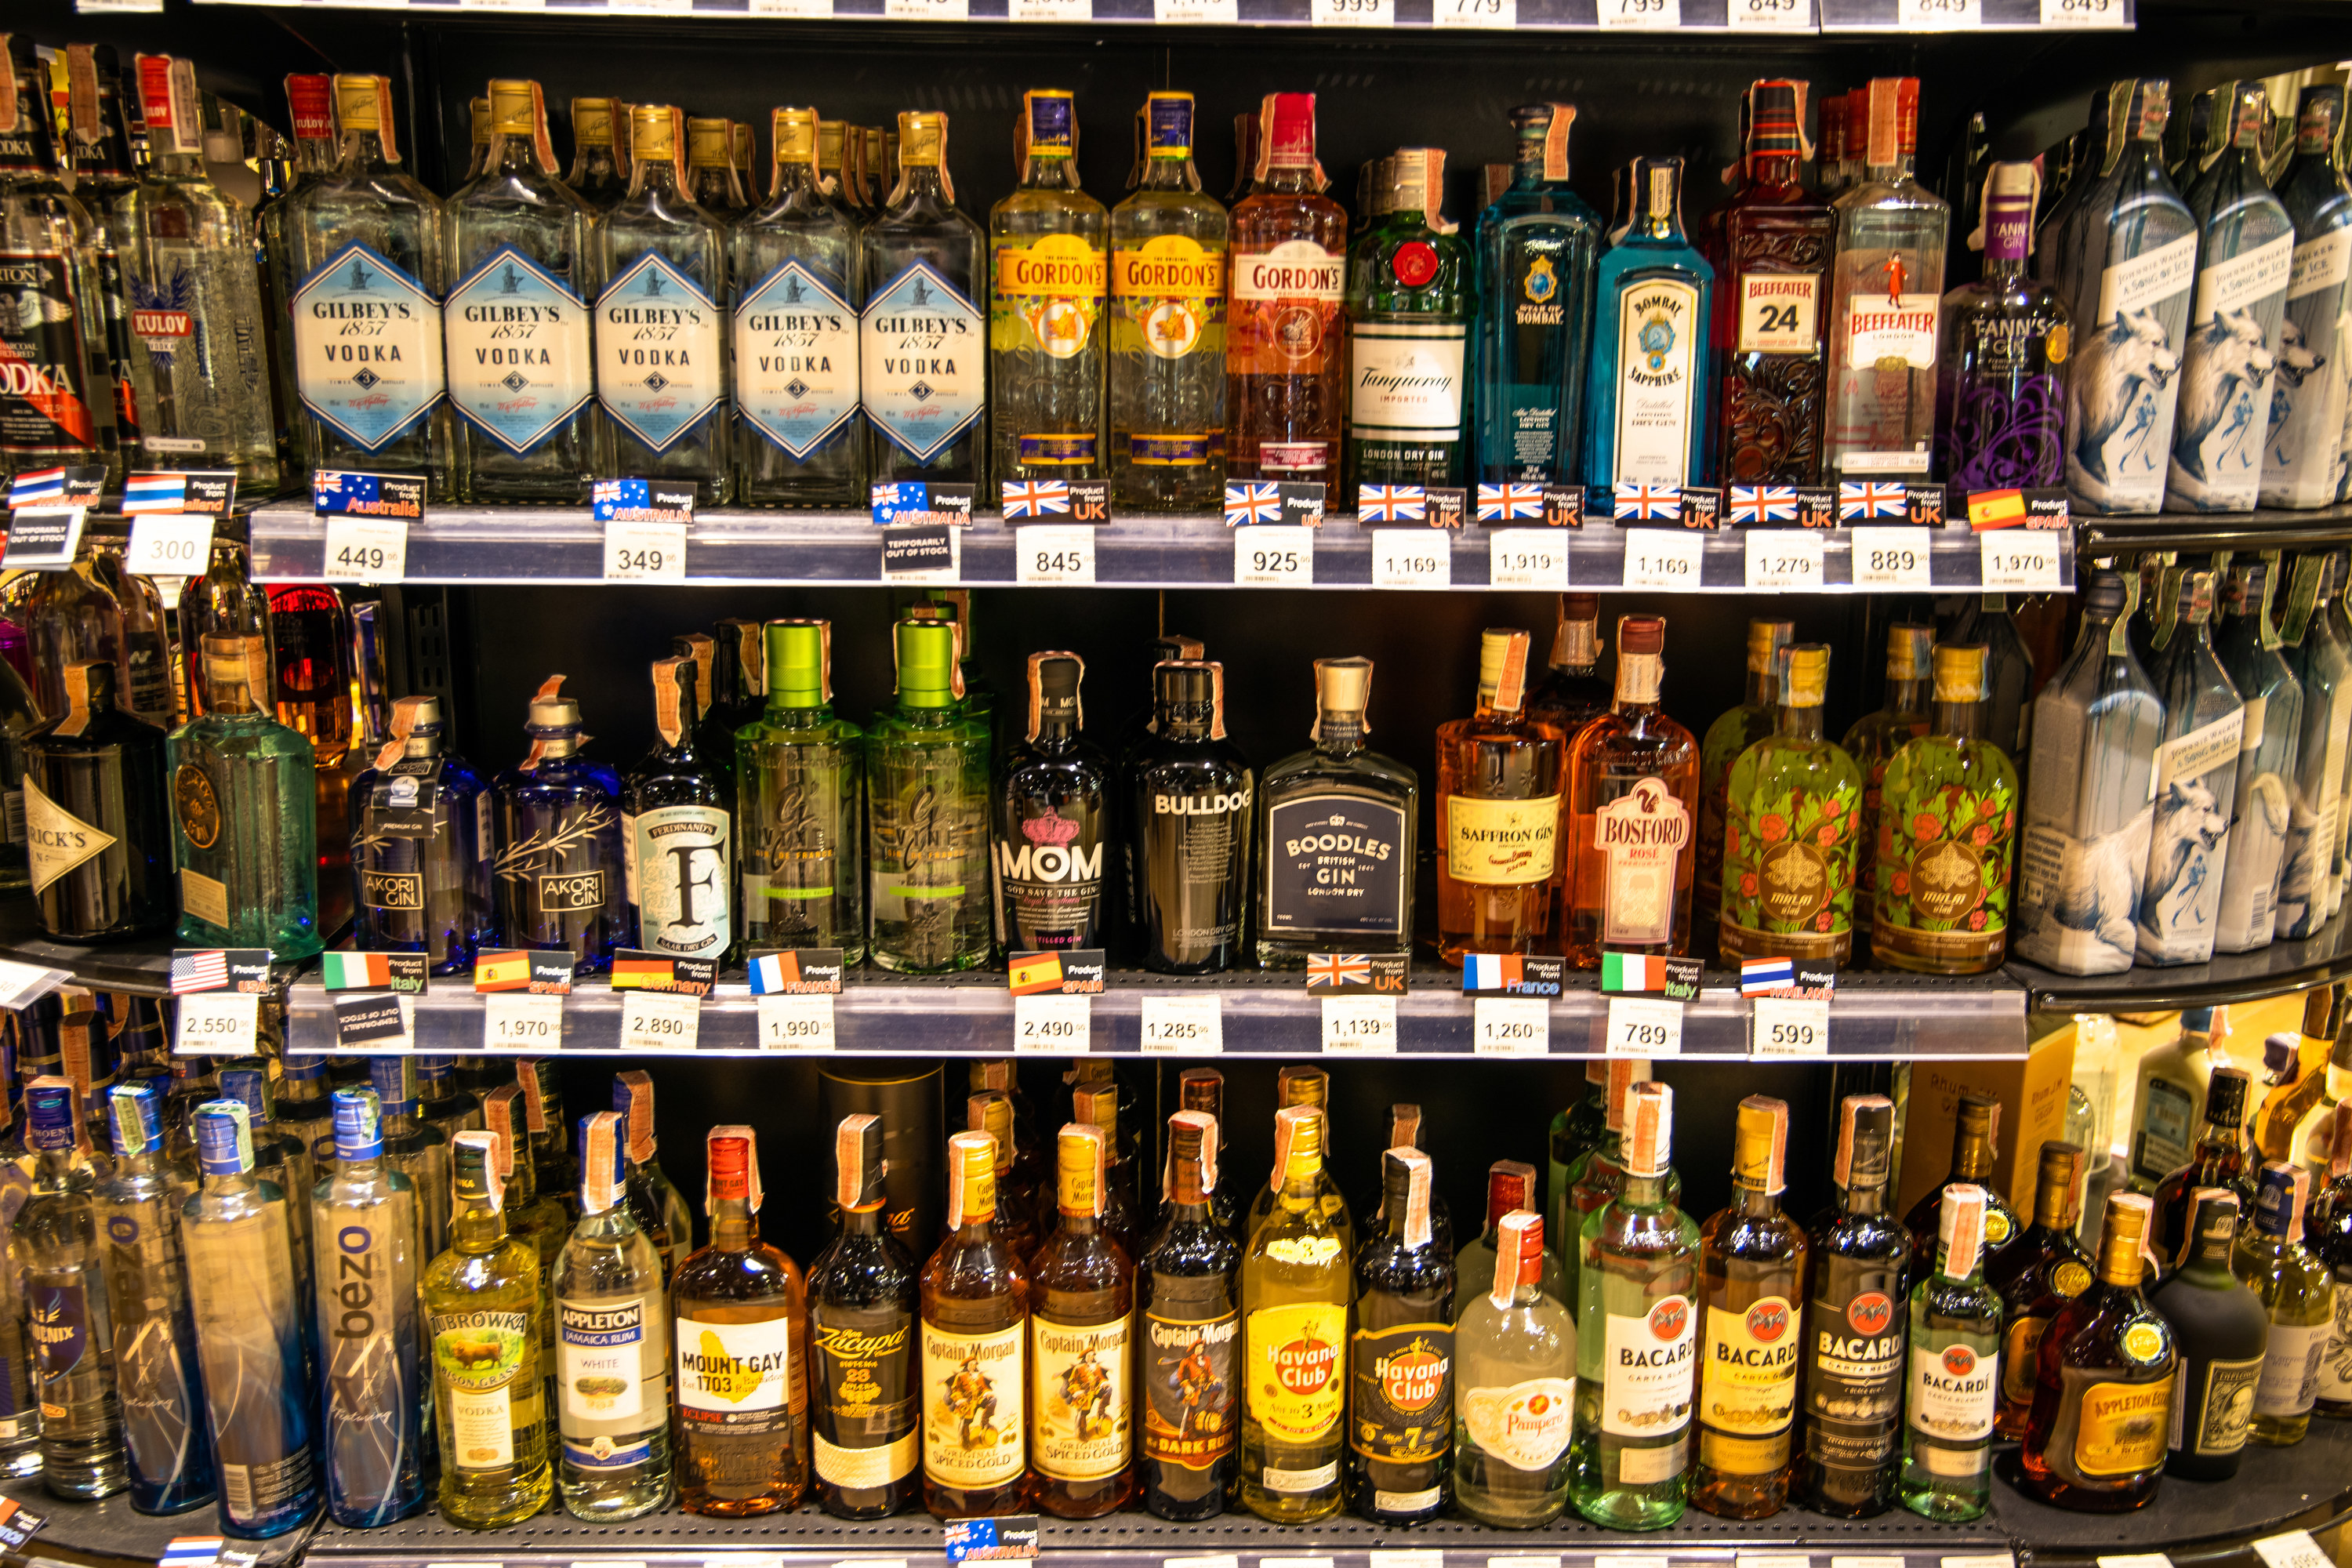 Shelves of several different types of liquor bottles